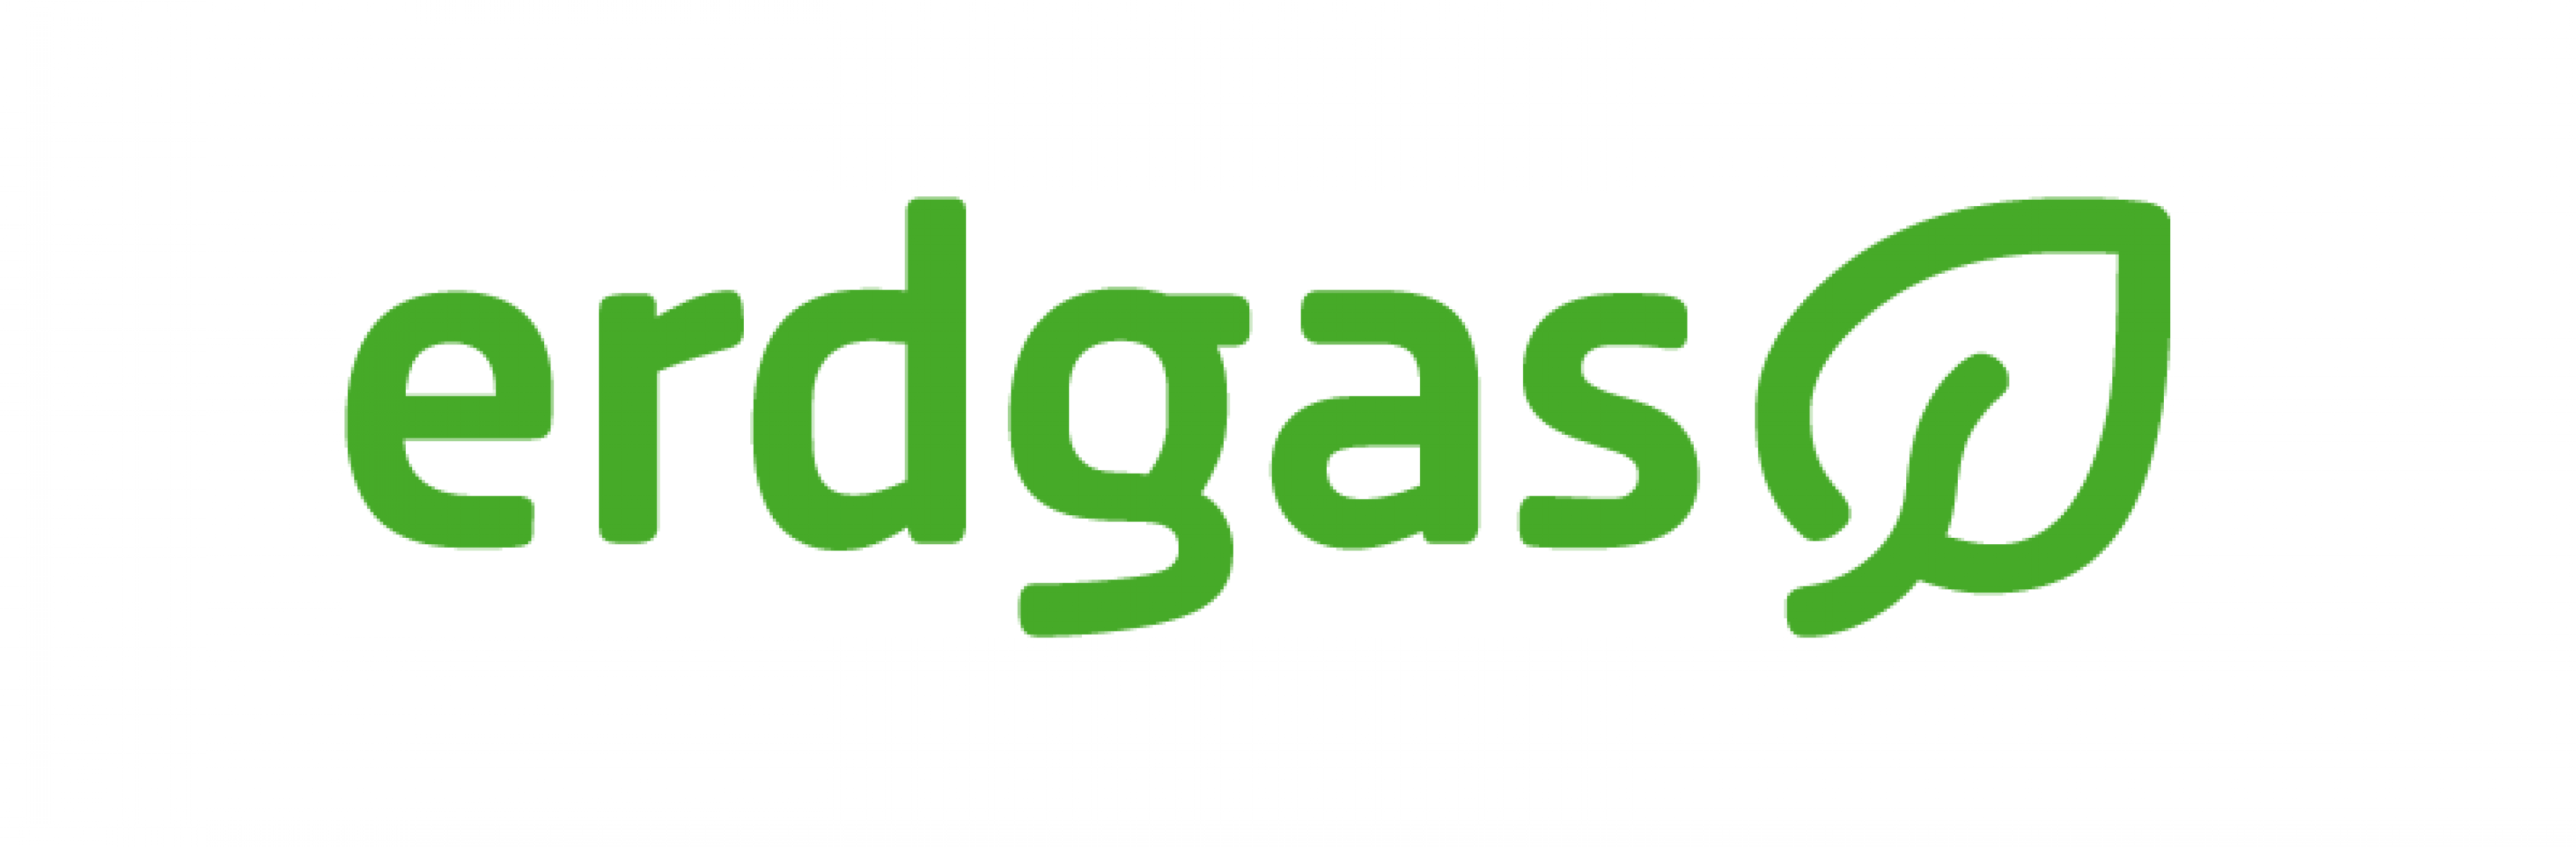 Gasbranche präsentiert neues Markendesign